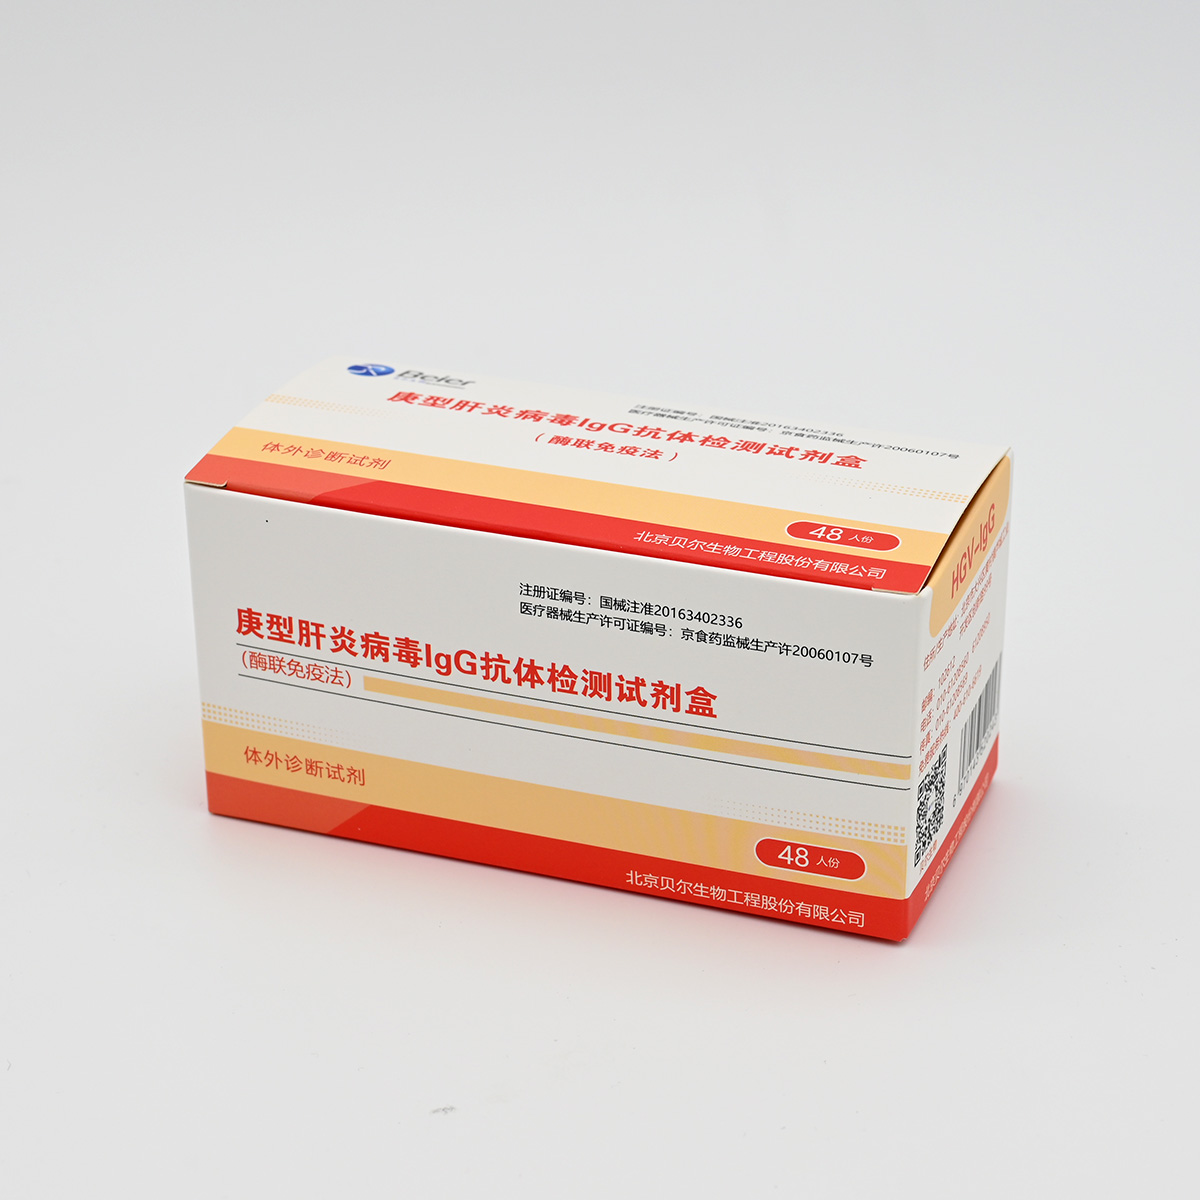 【贝尔】庚型肝炎病毒IgG抗体检测试剂盒(HGV-IGG)(酶联免疫法)